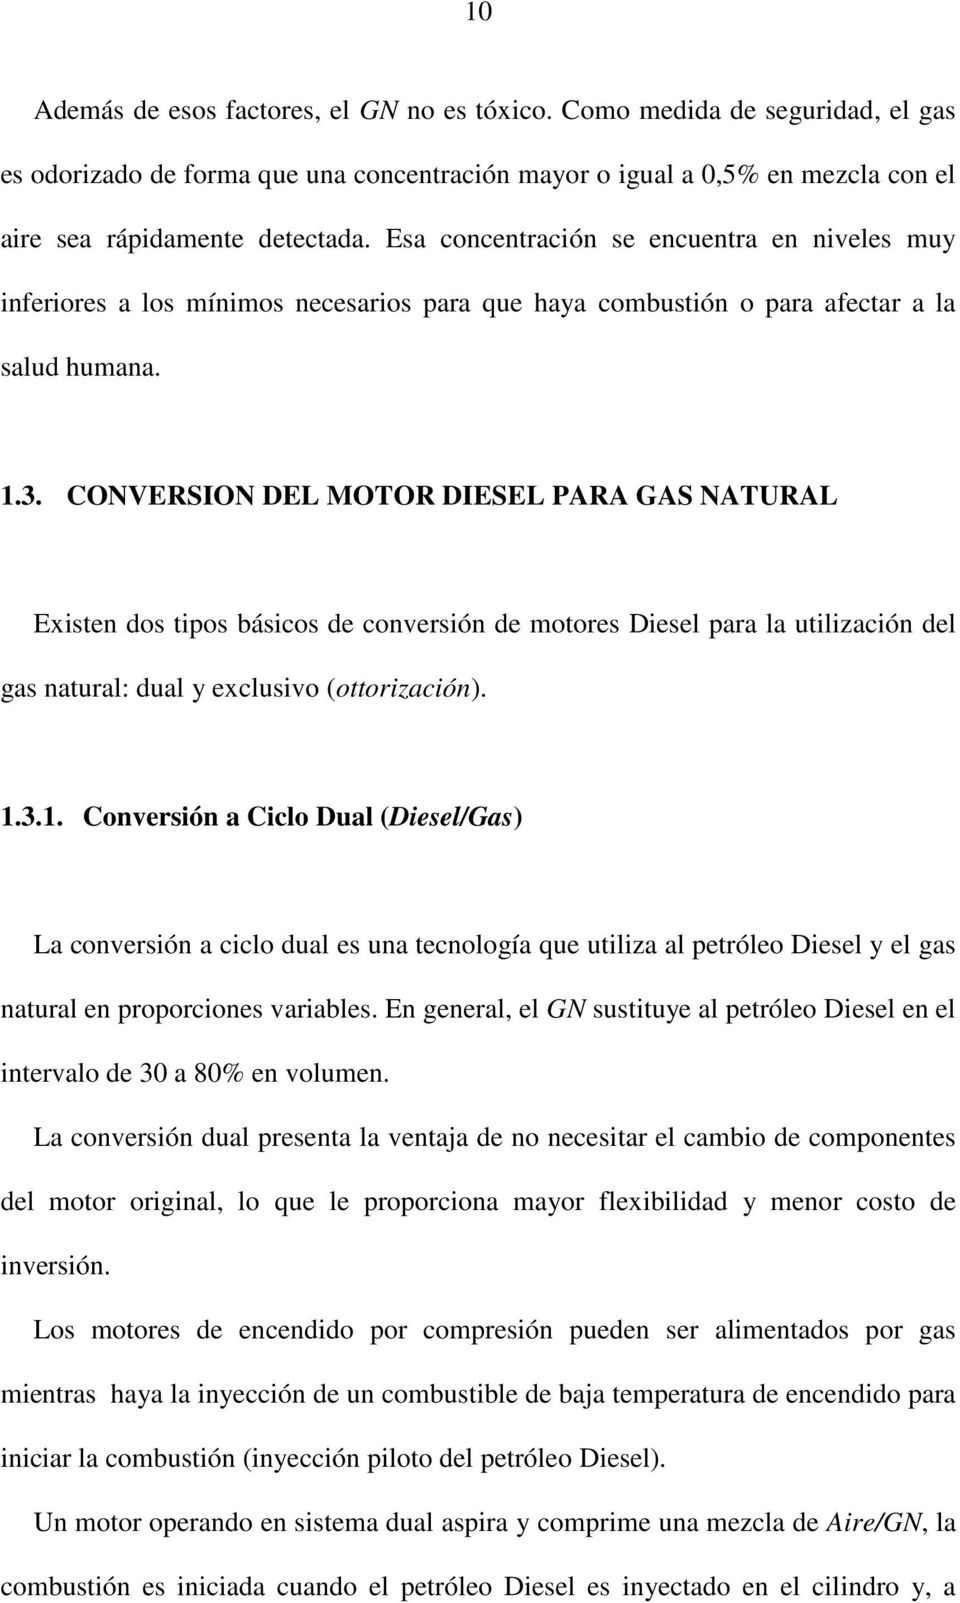 CONVERSION DEL MOTOR DIESEL PARA GAS NATURAL Existen dos tipos básicos de conversión de motores Diesel para la utilización del gas natural: dual y exclusivo (ottorización). 1.